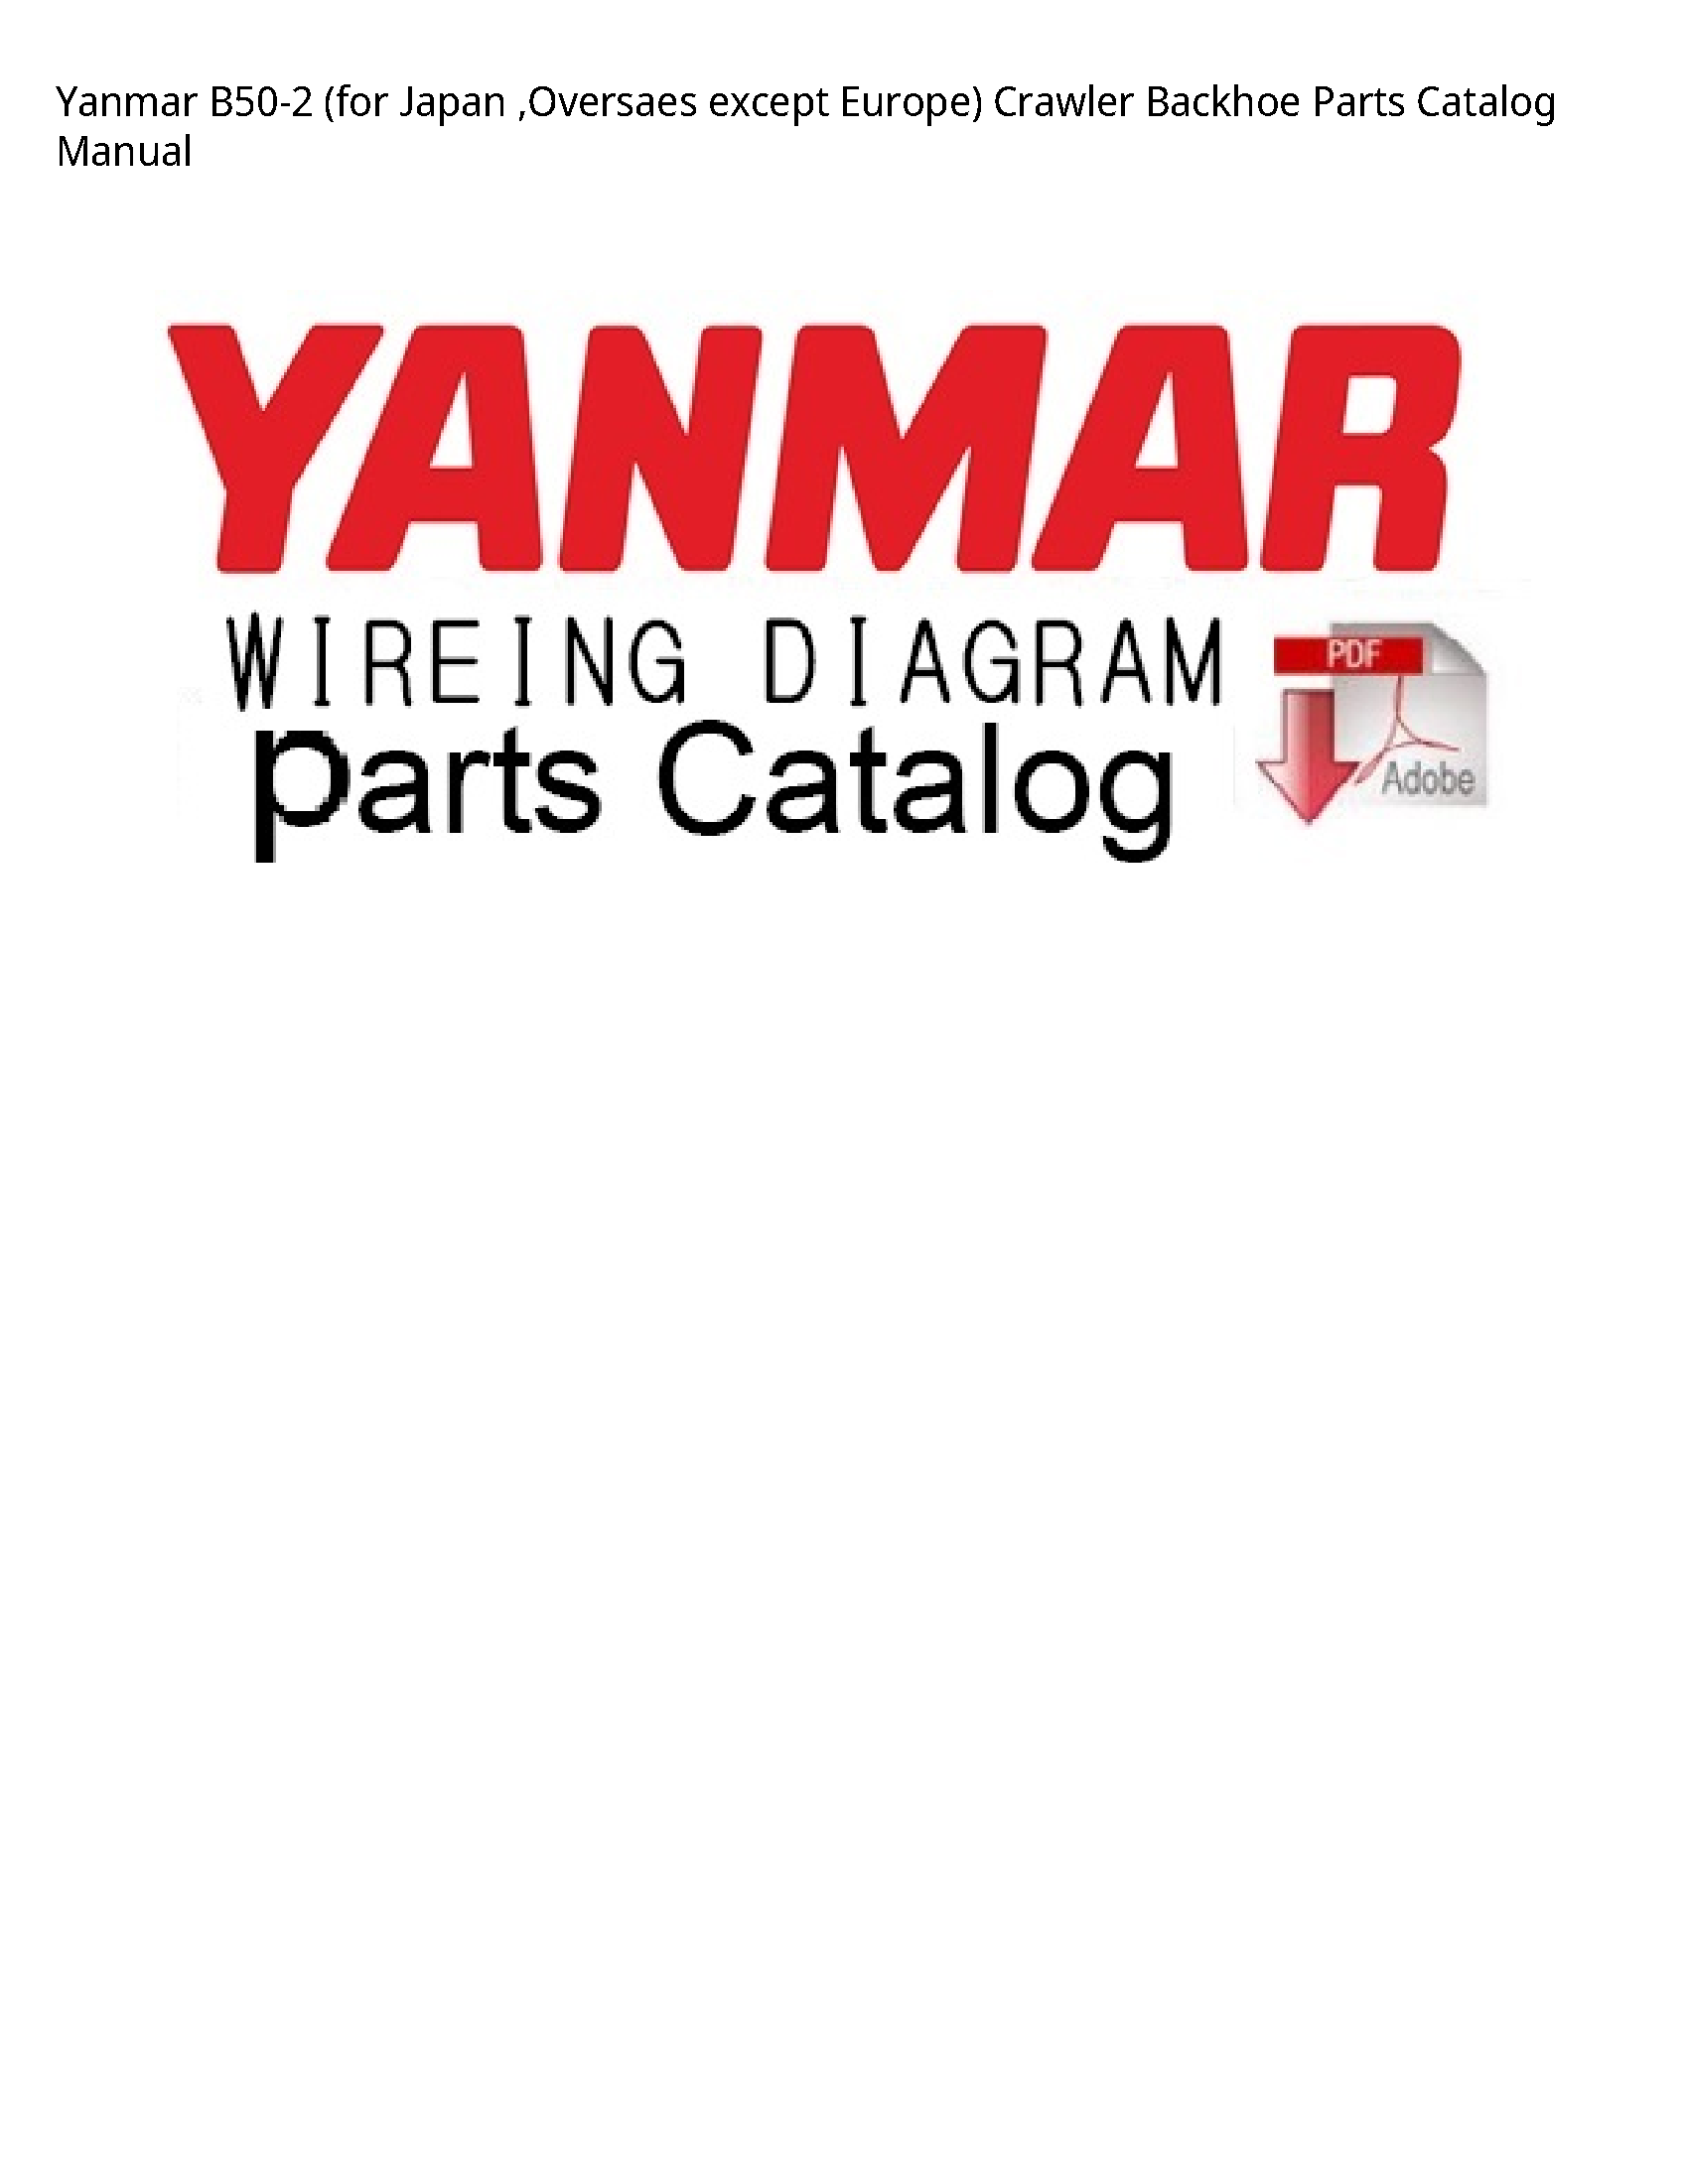 Yanmar B50-2 (for Japan  manual